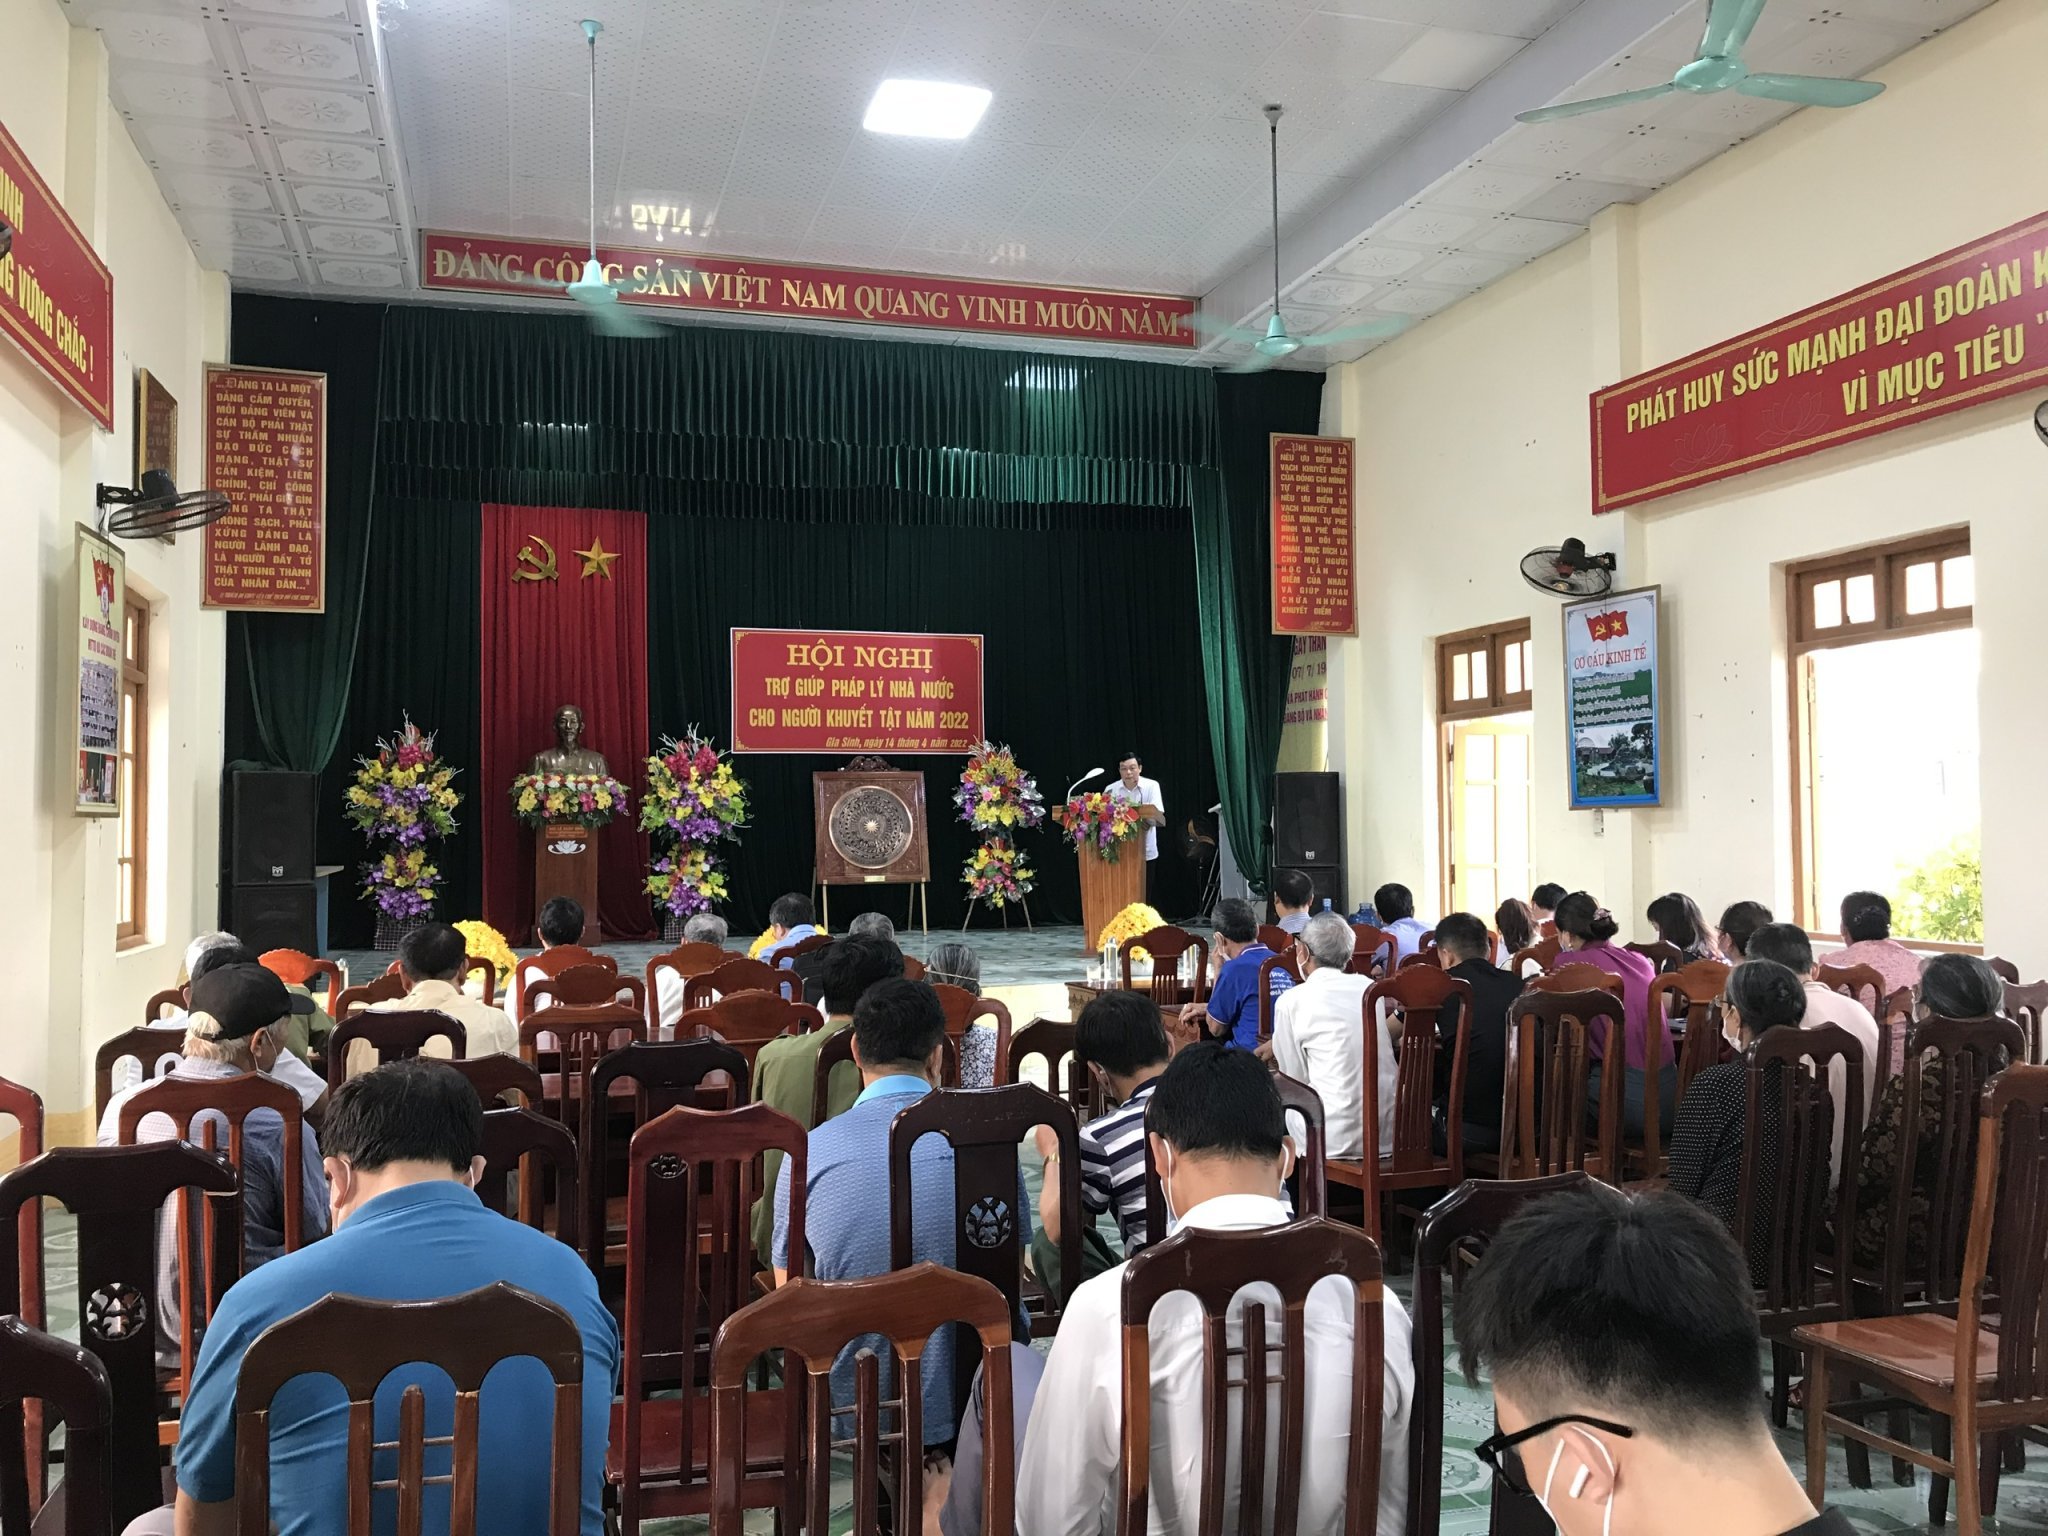 yên truyền và tư vấn pháp luật nhân kỷ niệm ngày Người khuyết tật Việt Nam